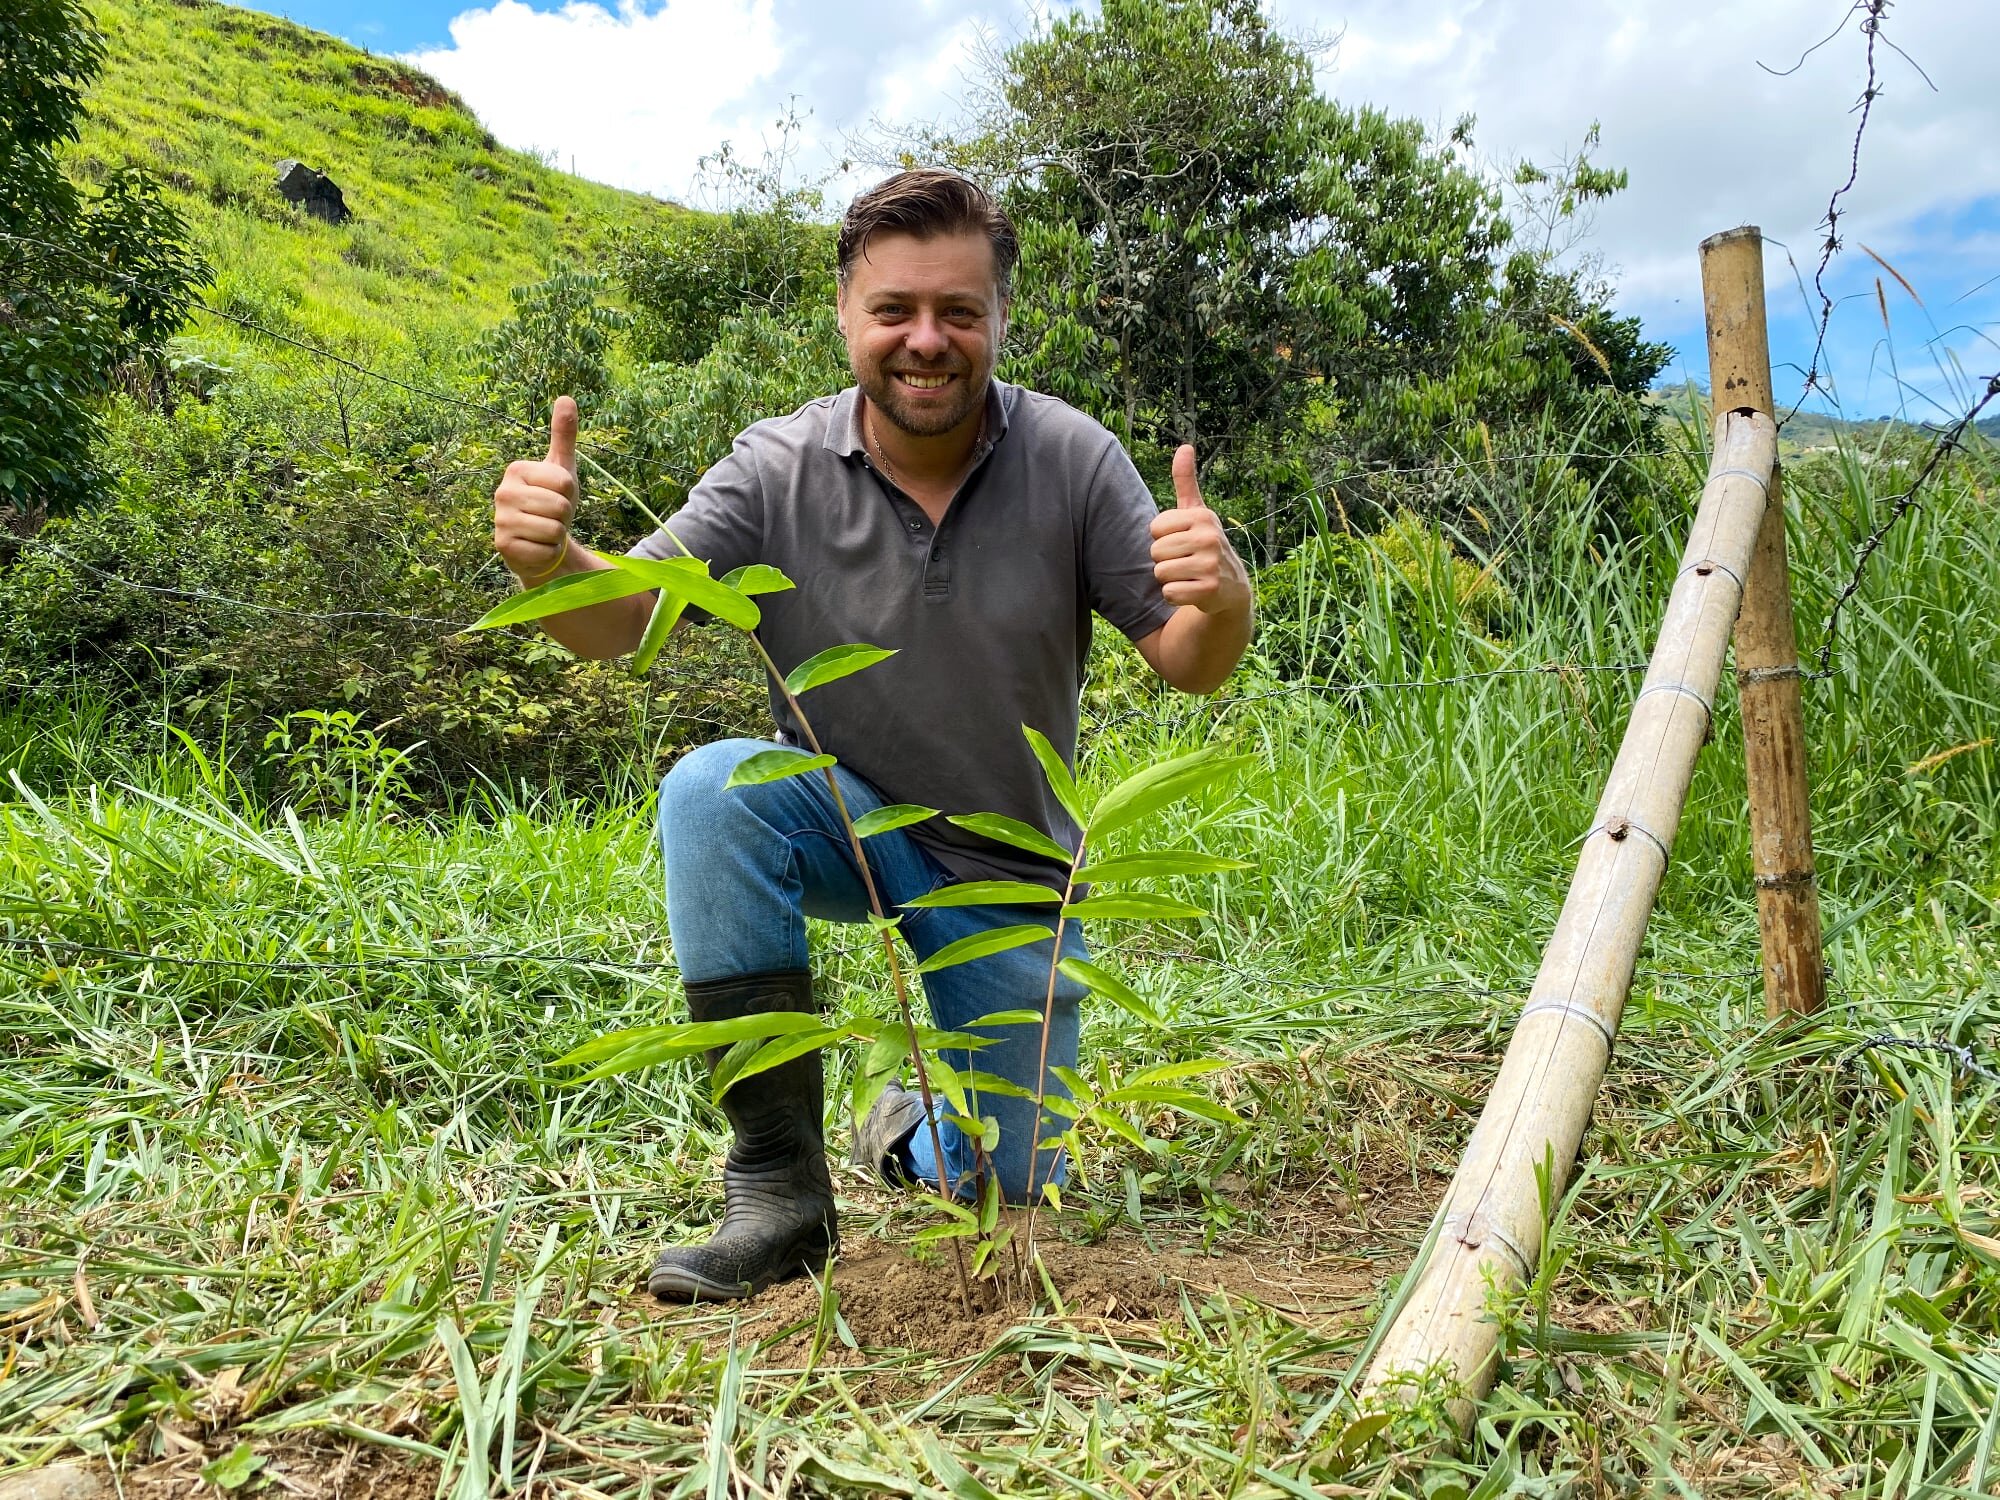 -采用竹子是Guadua竹子公司首席执行官、比利时竹子专家、欧洲竹子进口公司前联合创始人和共同所有者Stéphane Schröder的一项manbet体育平台网址私人倡议。自2007年以来，Stéphane一直在中美洲和南美洲种植竹子并与之合作。他成功地帮助并教会了当地农民和工匠如何以可持续的方式为国内和国际市场生产有附加值的竹子产品，从而造福于人民和地球。